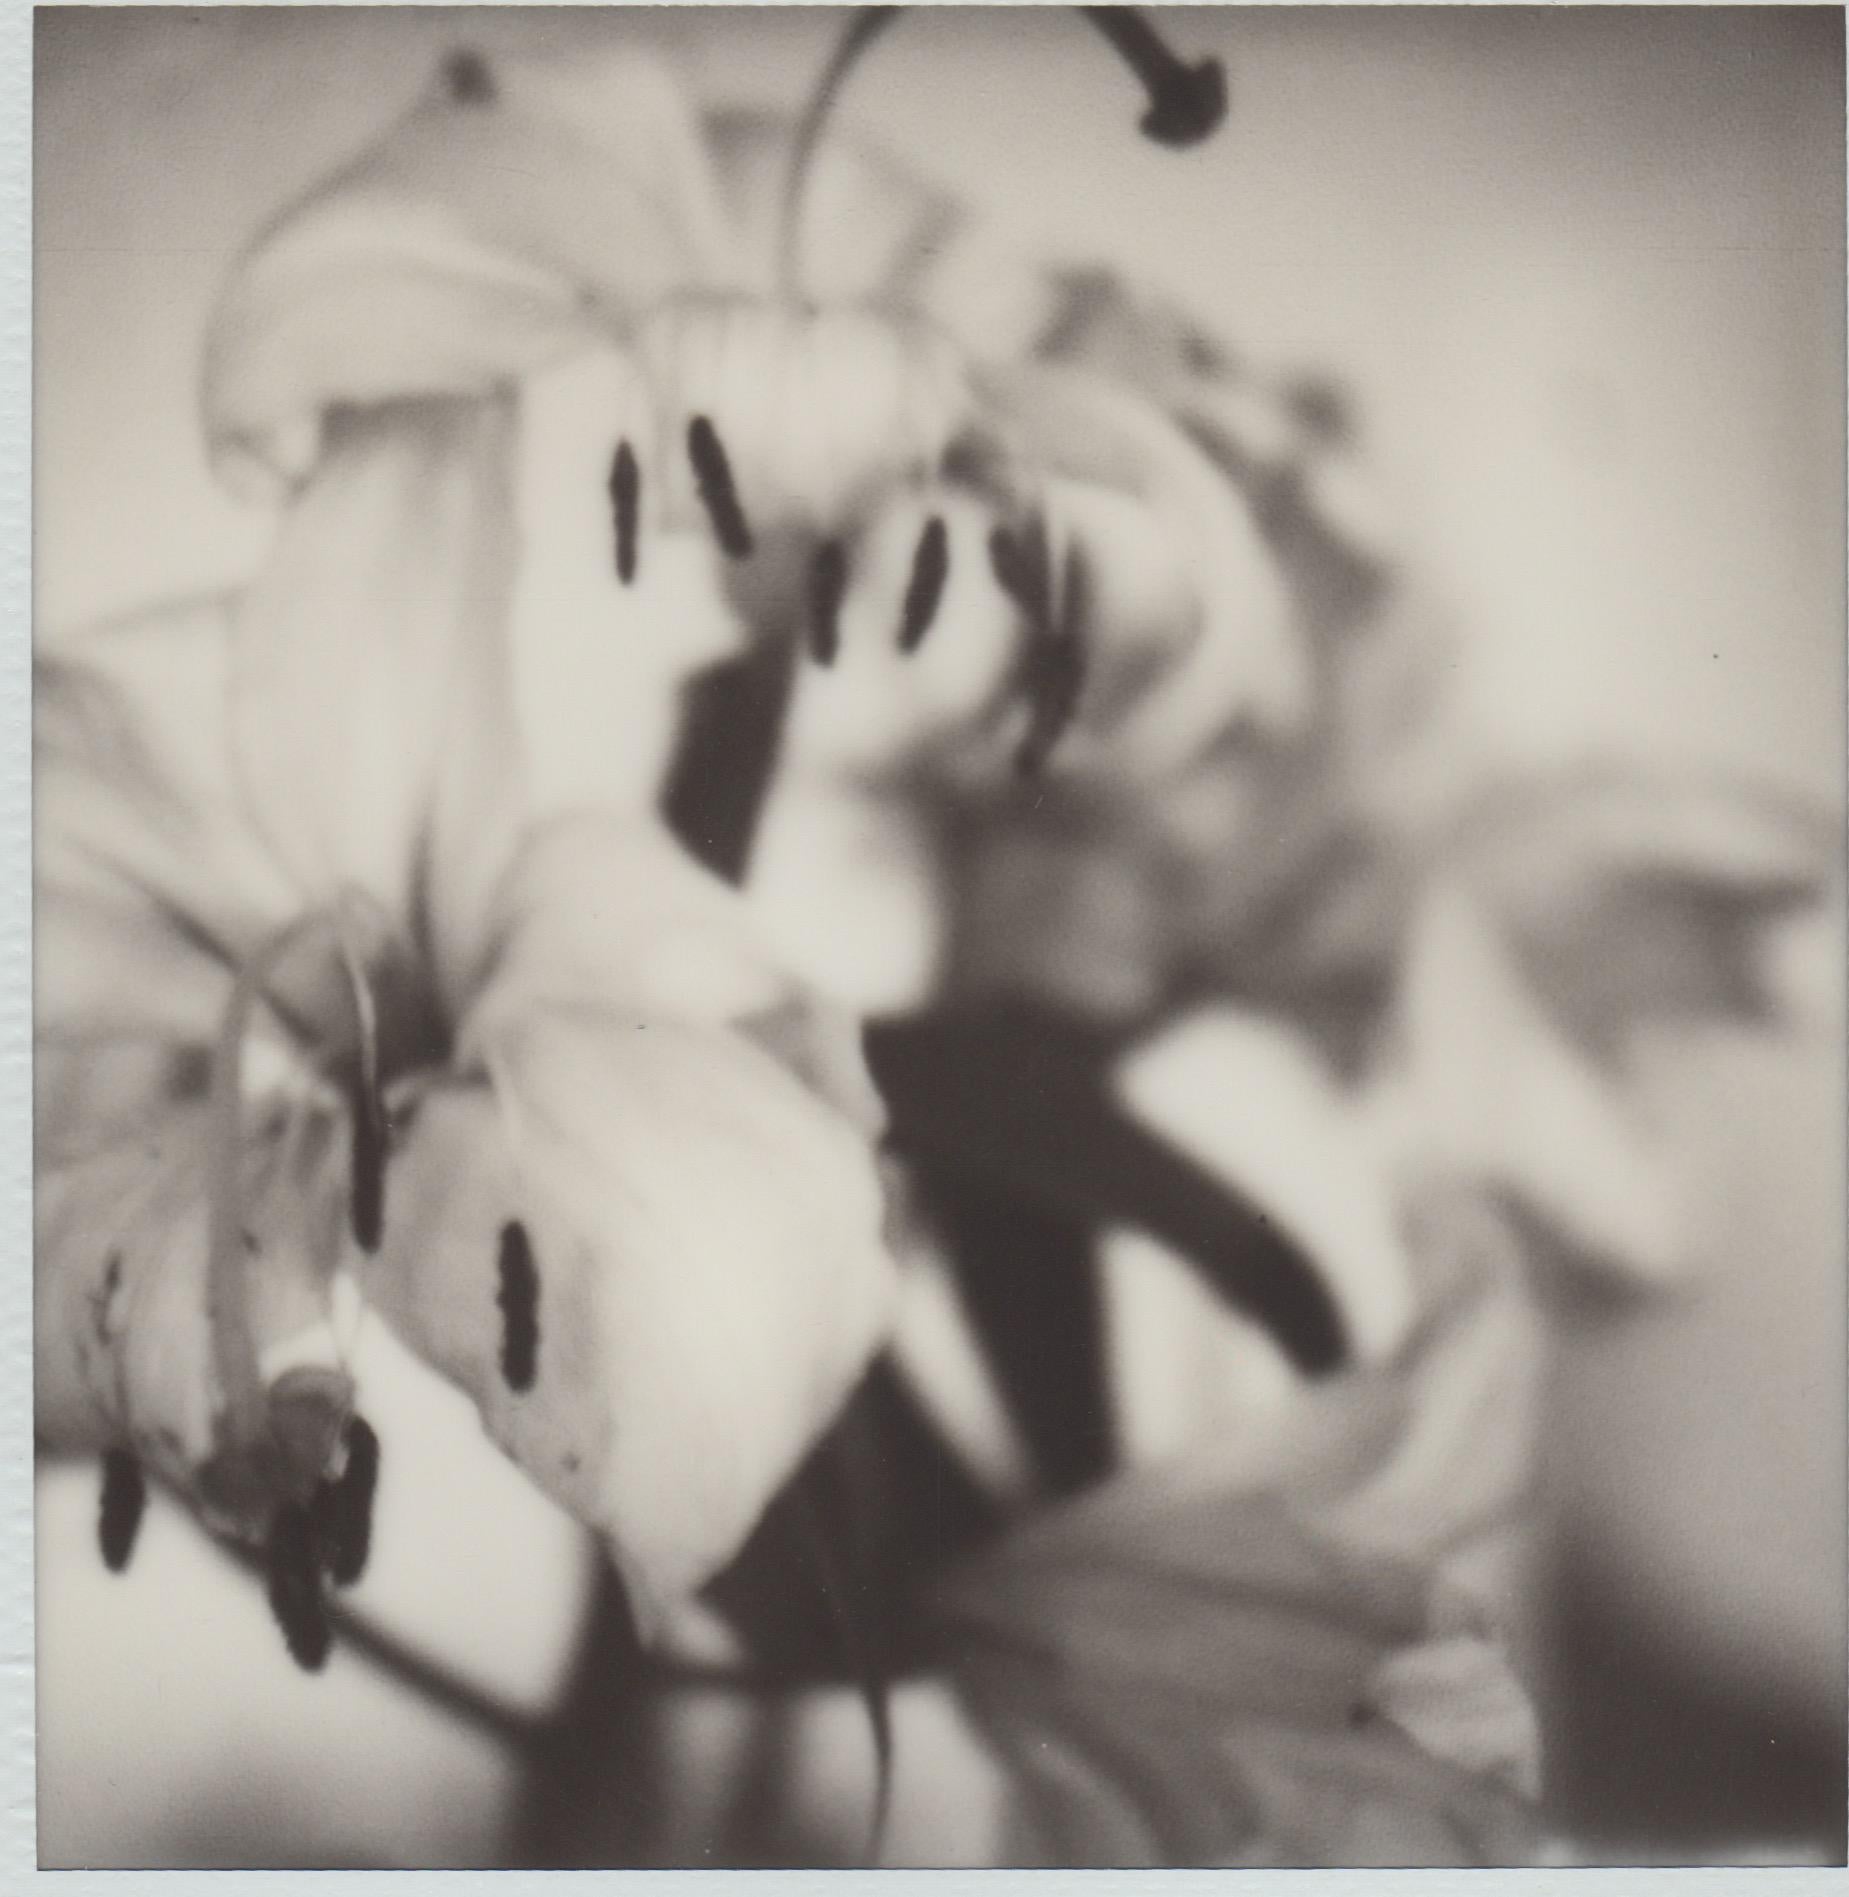 Past Bloom III - Zeitgenössische Schwarz-Weiß-Polaroid-Originalfotografie.

Pia Clodis Werke umfassen Momente und Erinnerungen an ihre unzähligen Spaziergänge durch Städte und Naturlandschaften. Diese Gelegenheiten, einen Gegenstand, eine Person